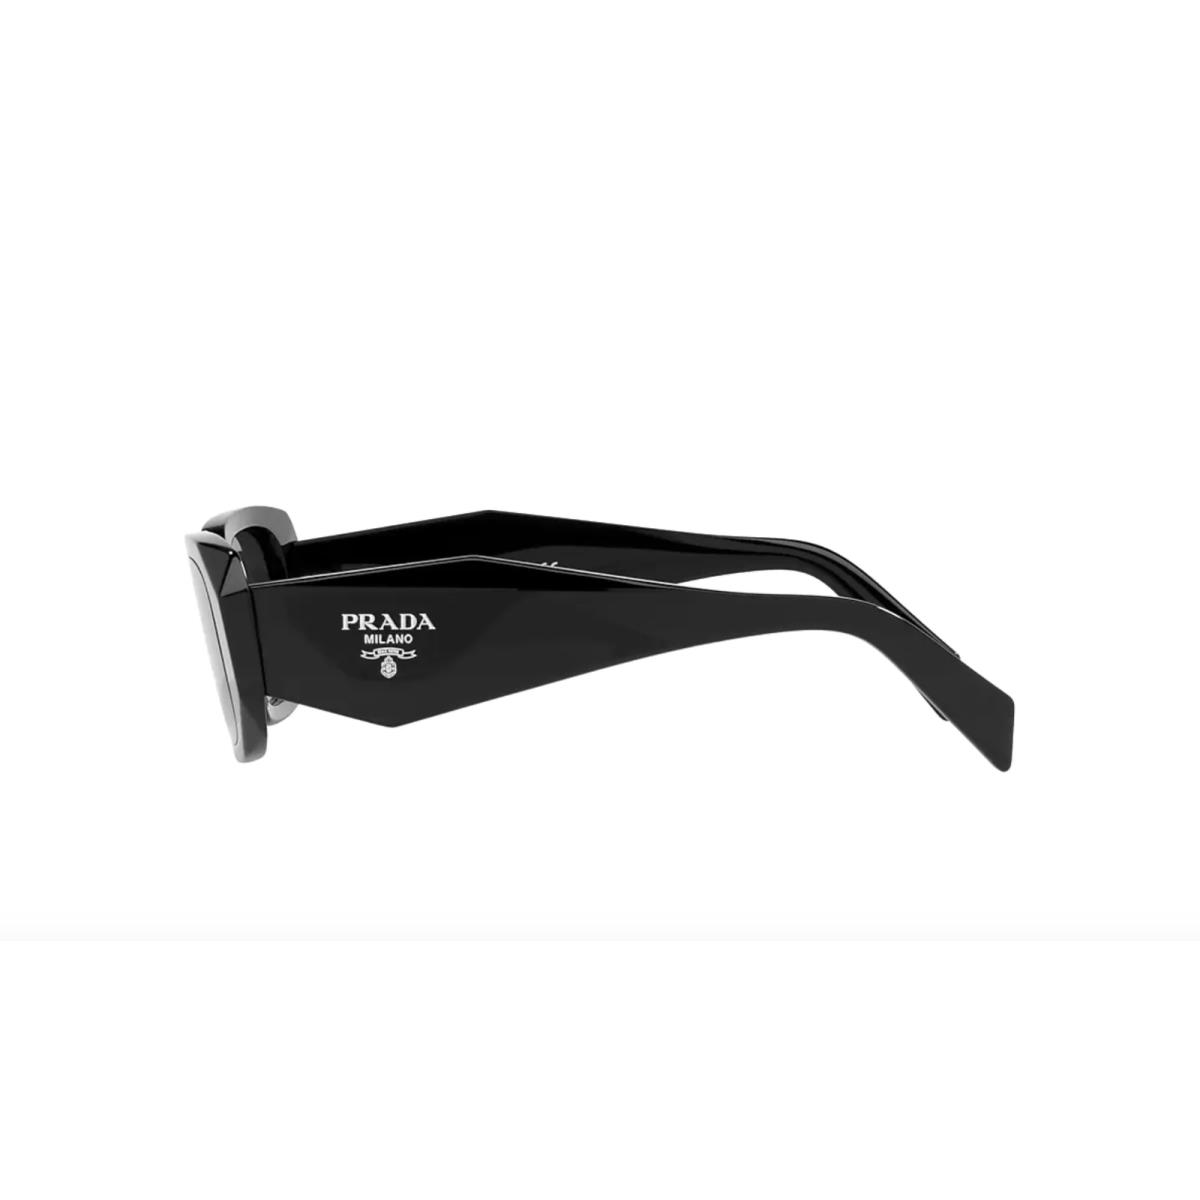 Prada sunglasses  - Black Frame, Gray Lens 1